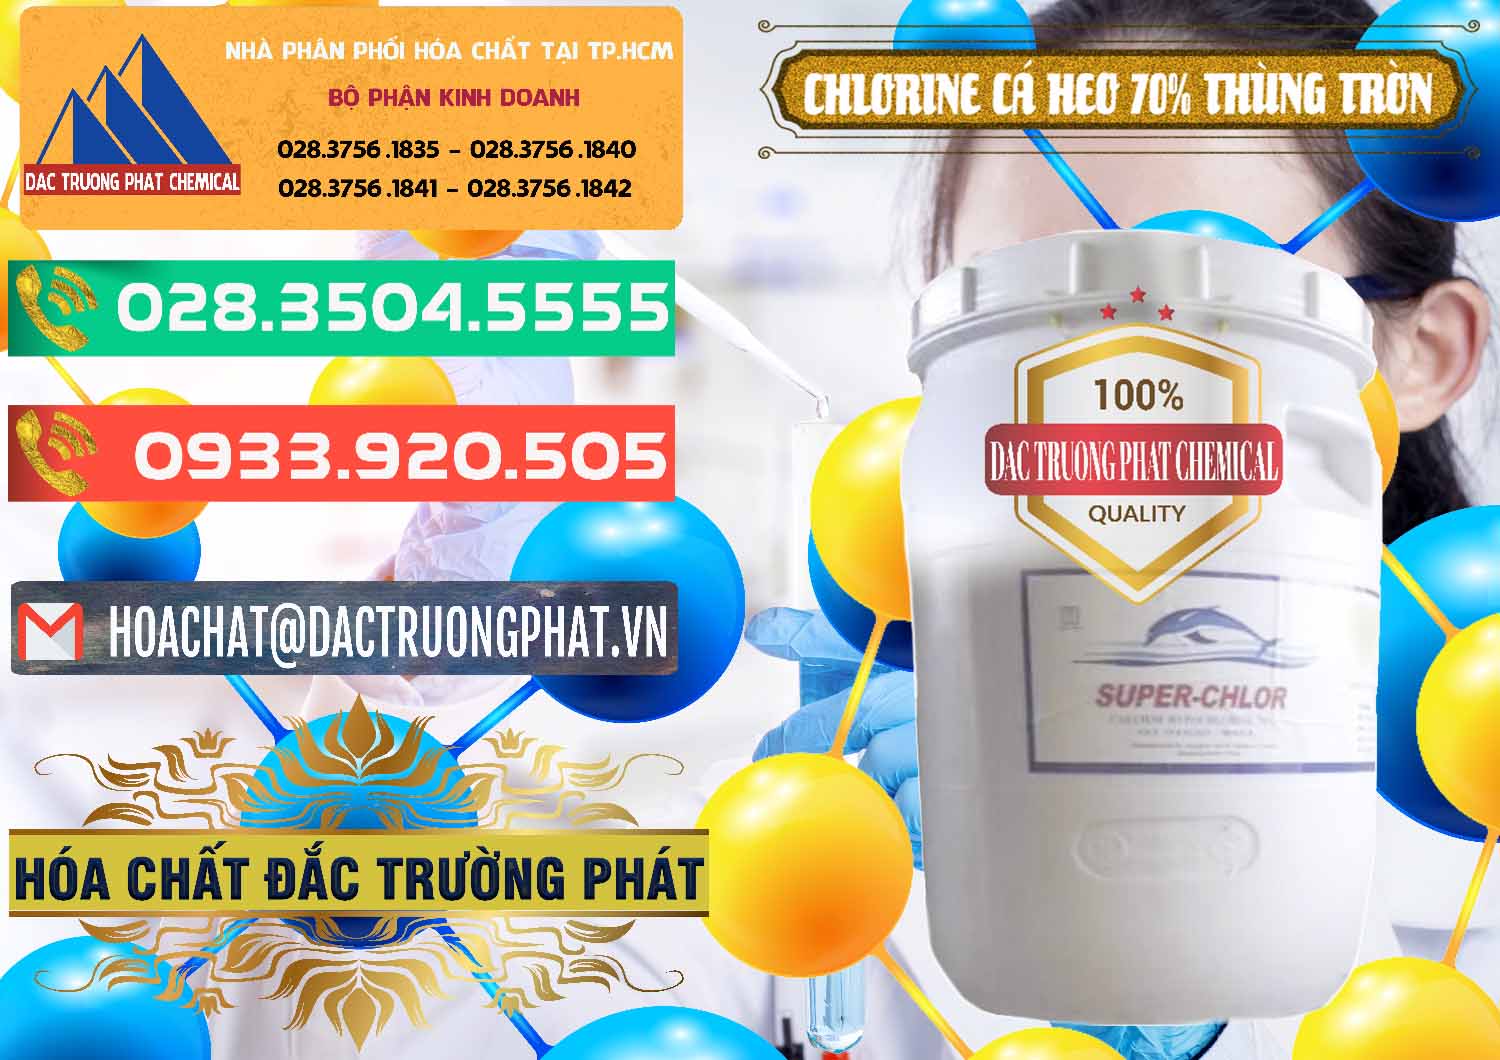 Cty bán ( cung cấp ) Clorin - Chlorine Cá Heo 70% Super Chlor Thùng Tròn Nắp Trắng Trung Quốc China - 0239 - Đơn vị bán ( cung cấp ) hóa chất tại TP.HCM - congtyhoachat.com.vn